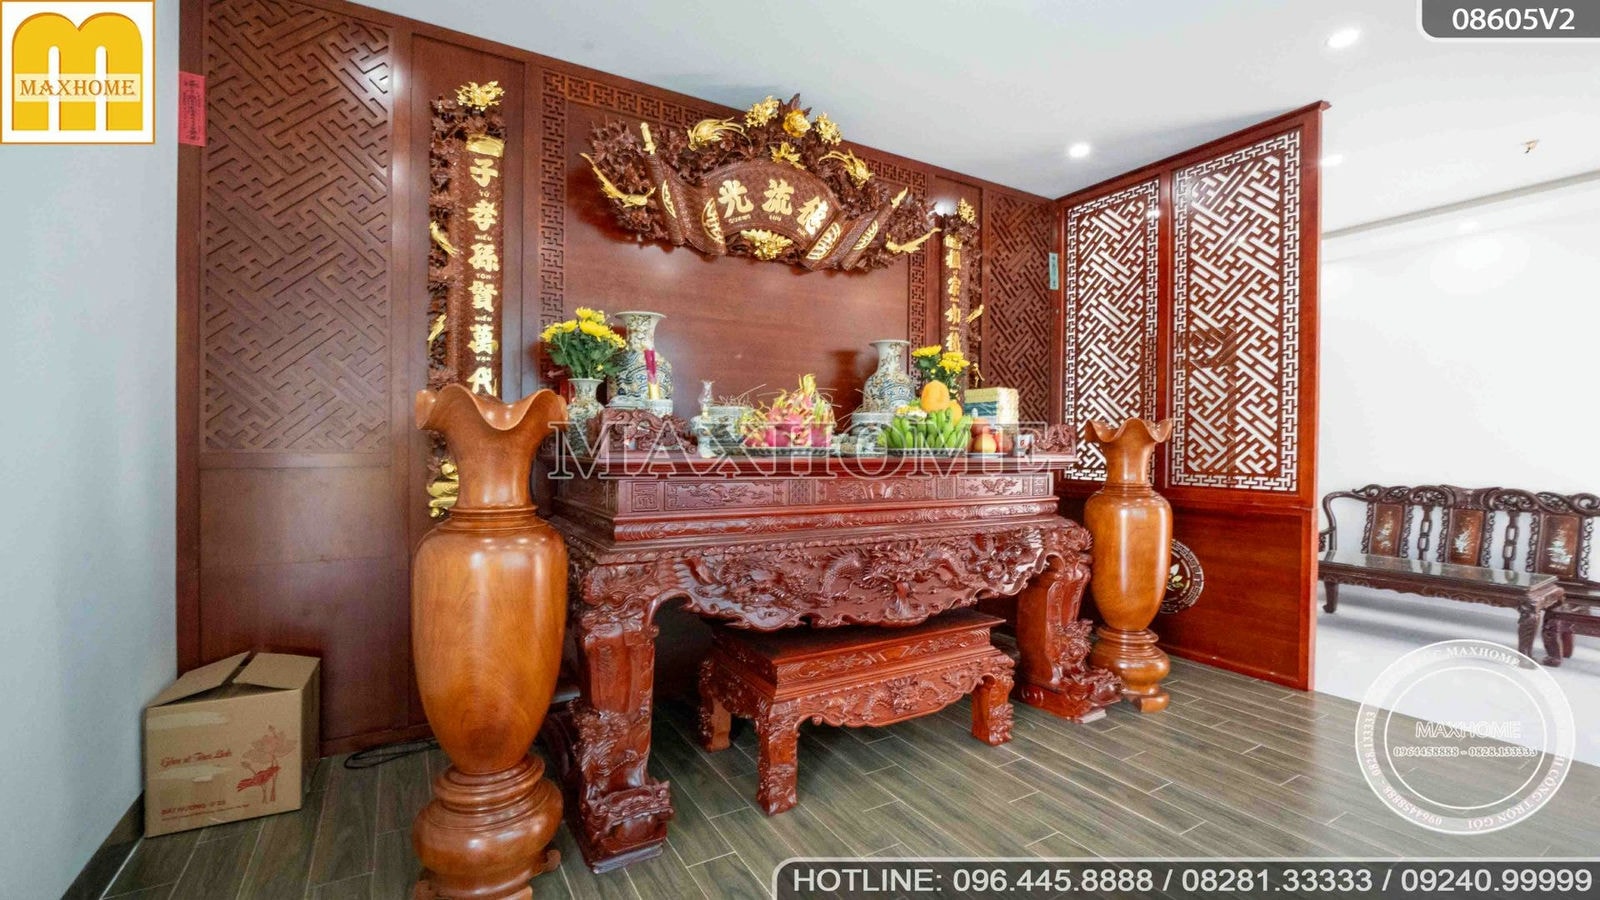 Maxhome bàn giao siêu phẩm tân cổ mái Nhật đẹp nổi bật tại Hà Nội